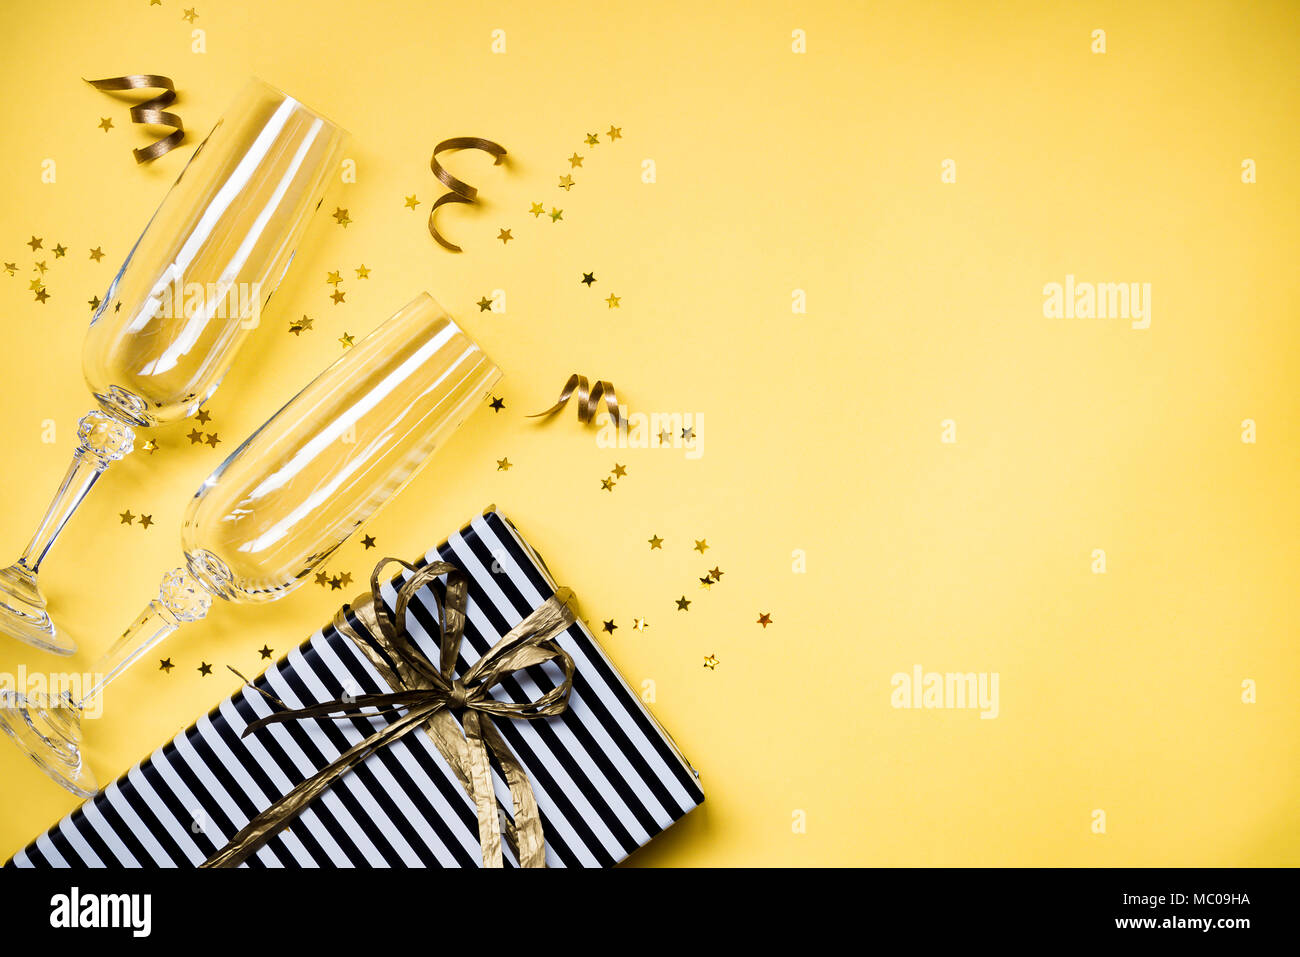 Célébration Contexte - Vue de dessus deux chrystal verres de champagne, une boîte cadeau enveloppé dans du papier rayé noir et blanc, des rubans et des étoiles d'or en forme de Banque D'Images